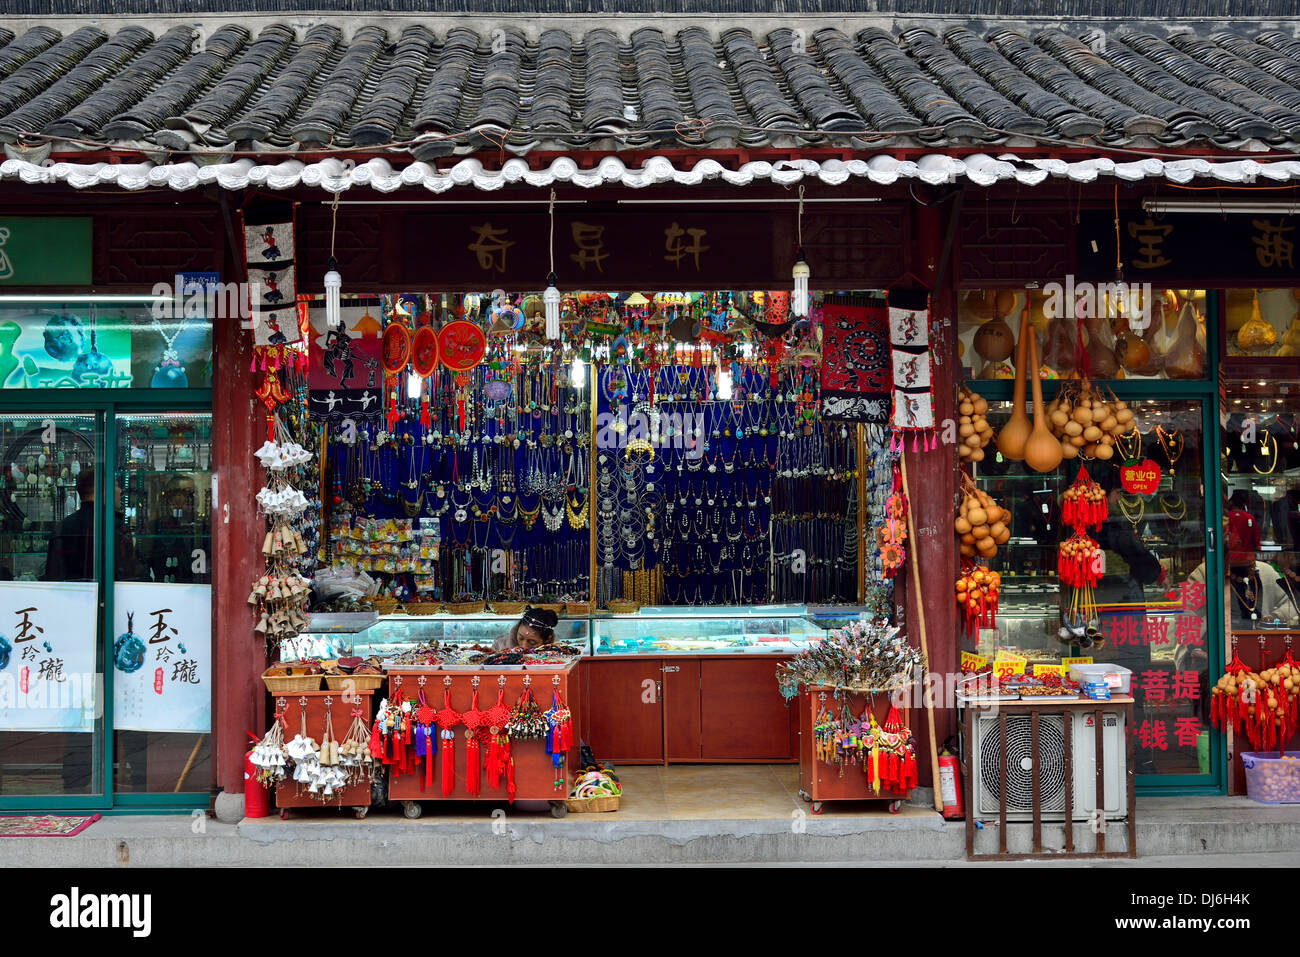 Negozi di souvenir lungo la strada storica. Nanjing, provincia dello Jiangsu, Cina. Foto Stock